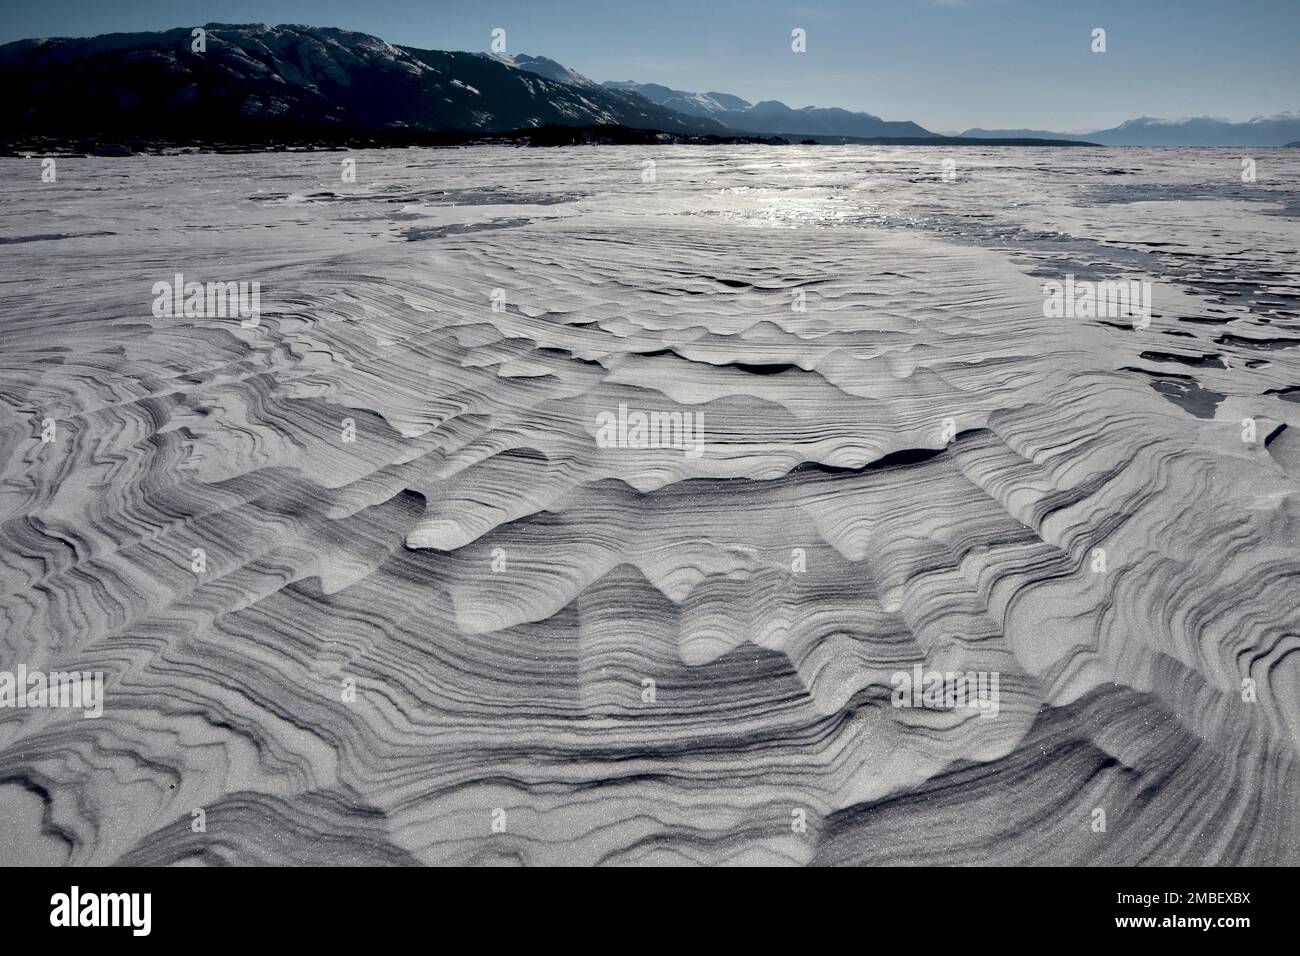 Texturen und Linien im Schneefall auf dem gefrorenen See mit blauem Himmel und bewaldeten Bergen im Hintergrund. An einem dieser knackigen arktischen Wintermorgen mit Stockfoto